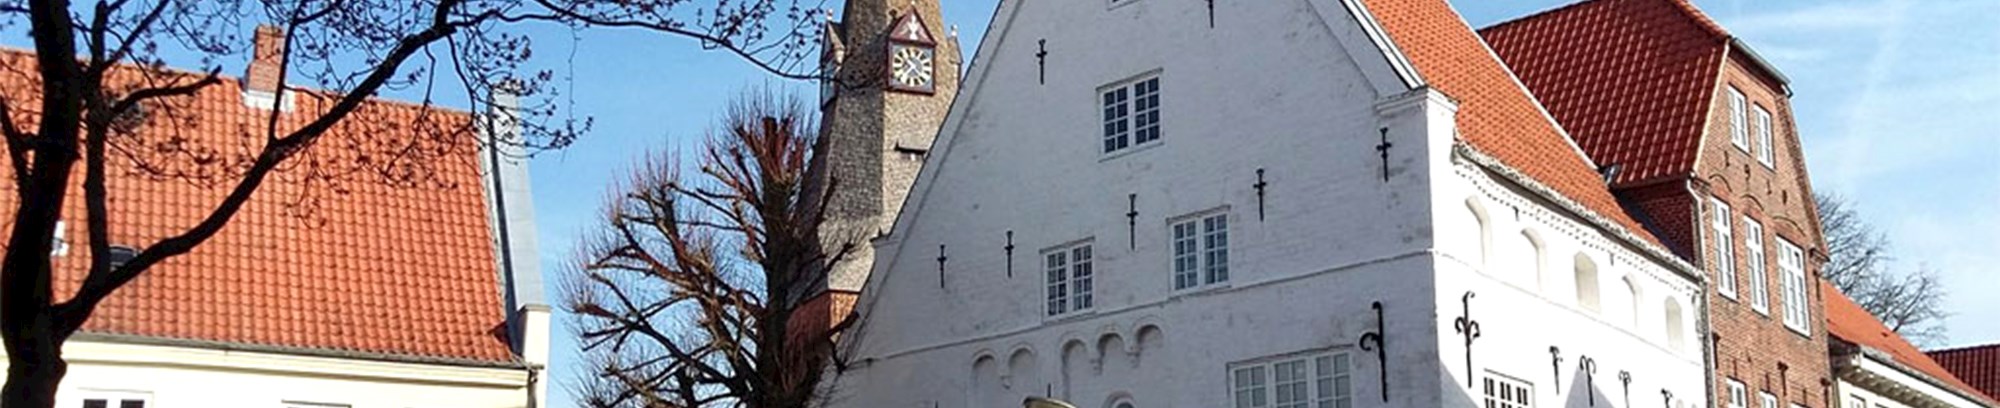 Klostercaféen i Tønder